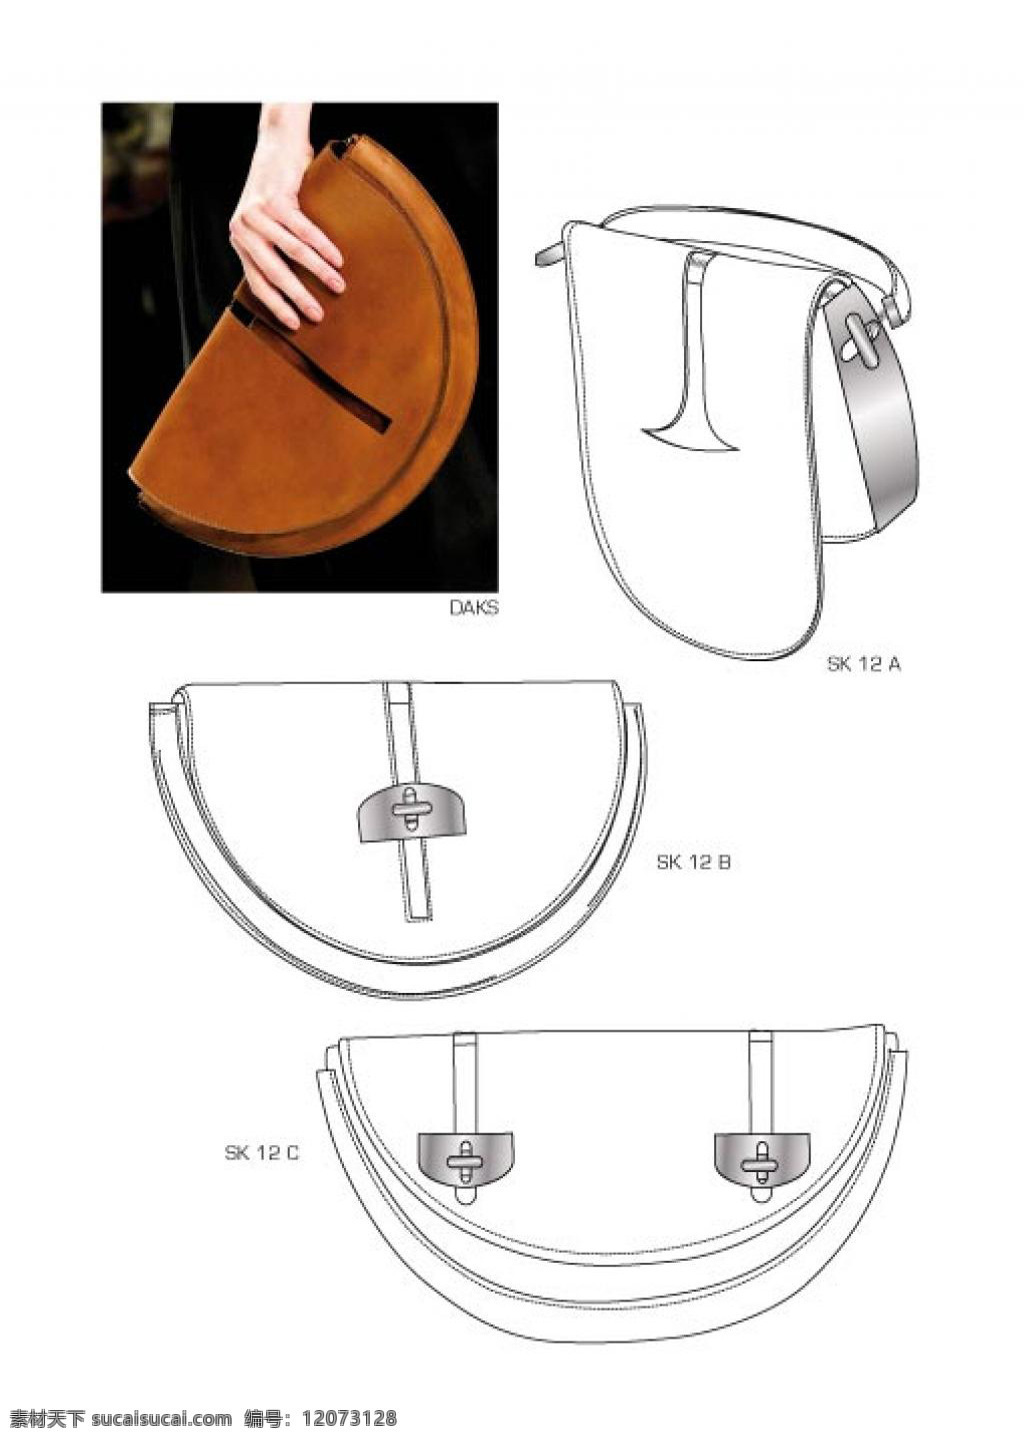 手包 设计图 实物 对比 图 包包 钱包 女包 箱包 包包设计图 时尚女包 手提包 背包 双肩包 书包 男装 皮包 单肩包